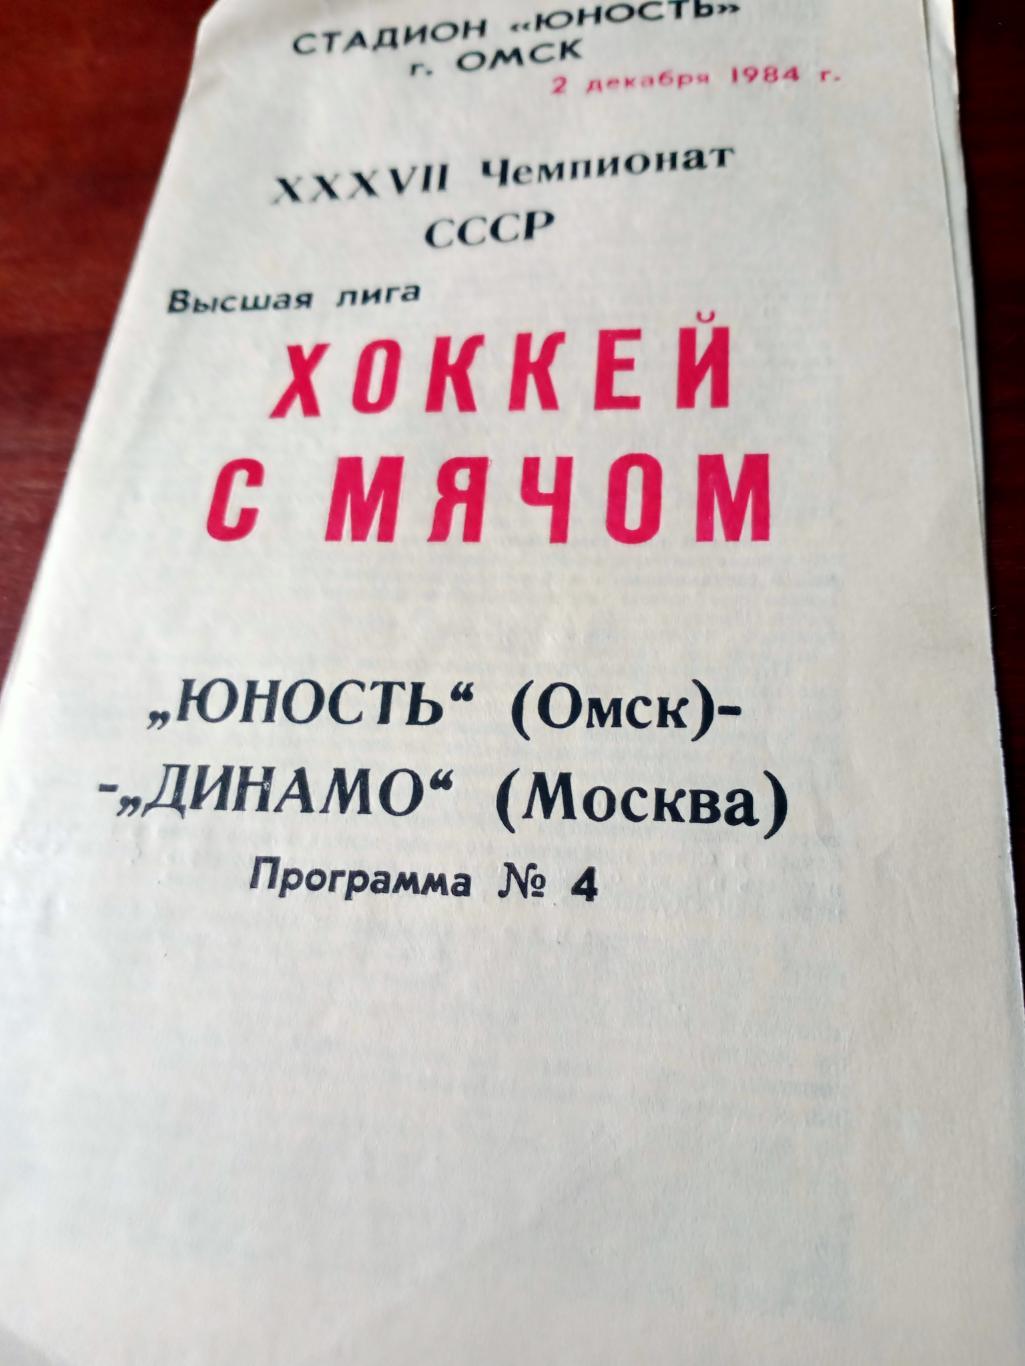 Юность Омск - Динамо Москва. 2 декабря 1984 год